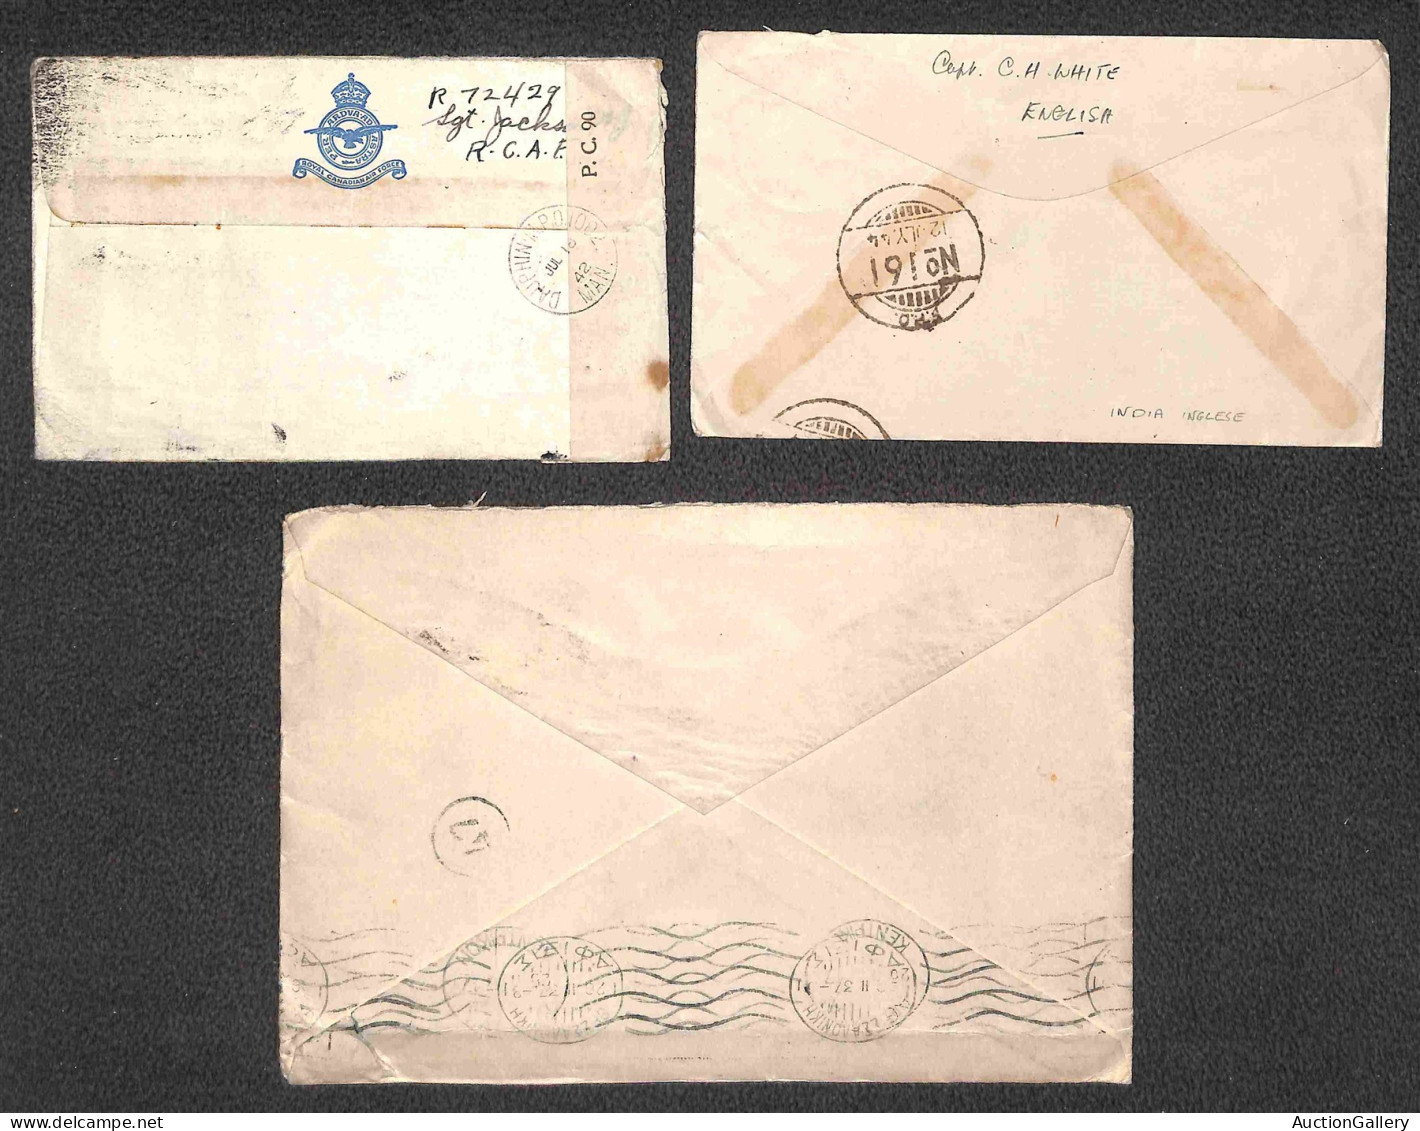 OLTREMARE - INDIA - 1903/1944 - Ventuno lettere e cartoline con varie affrancature del periodo per l'estero - da esamina